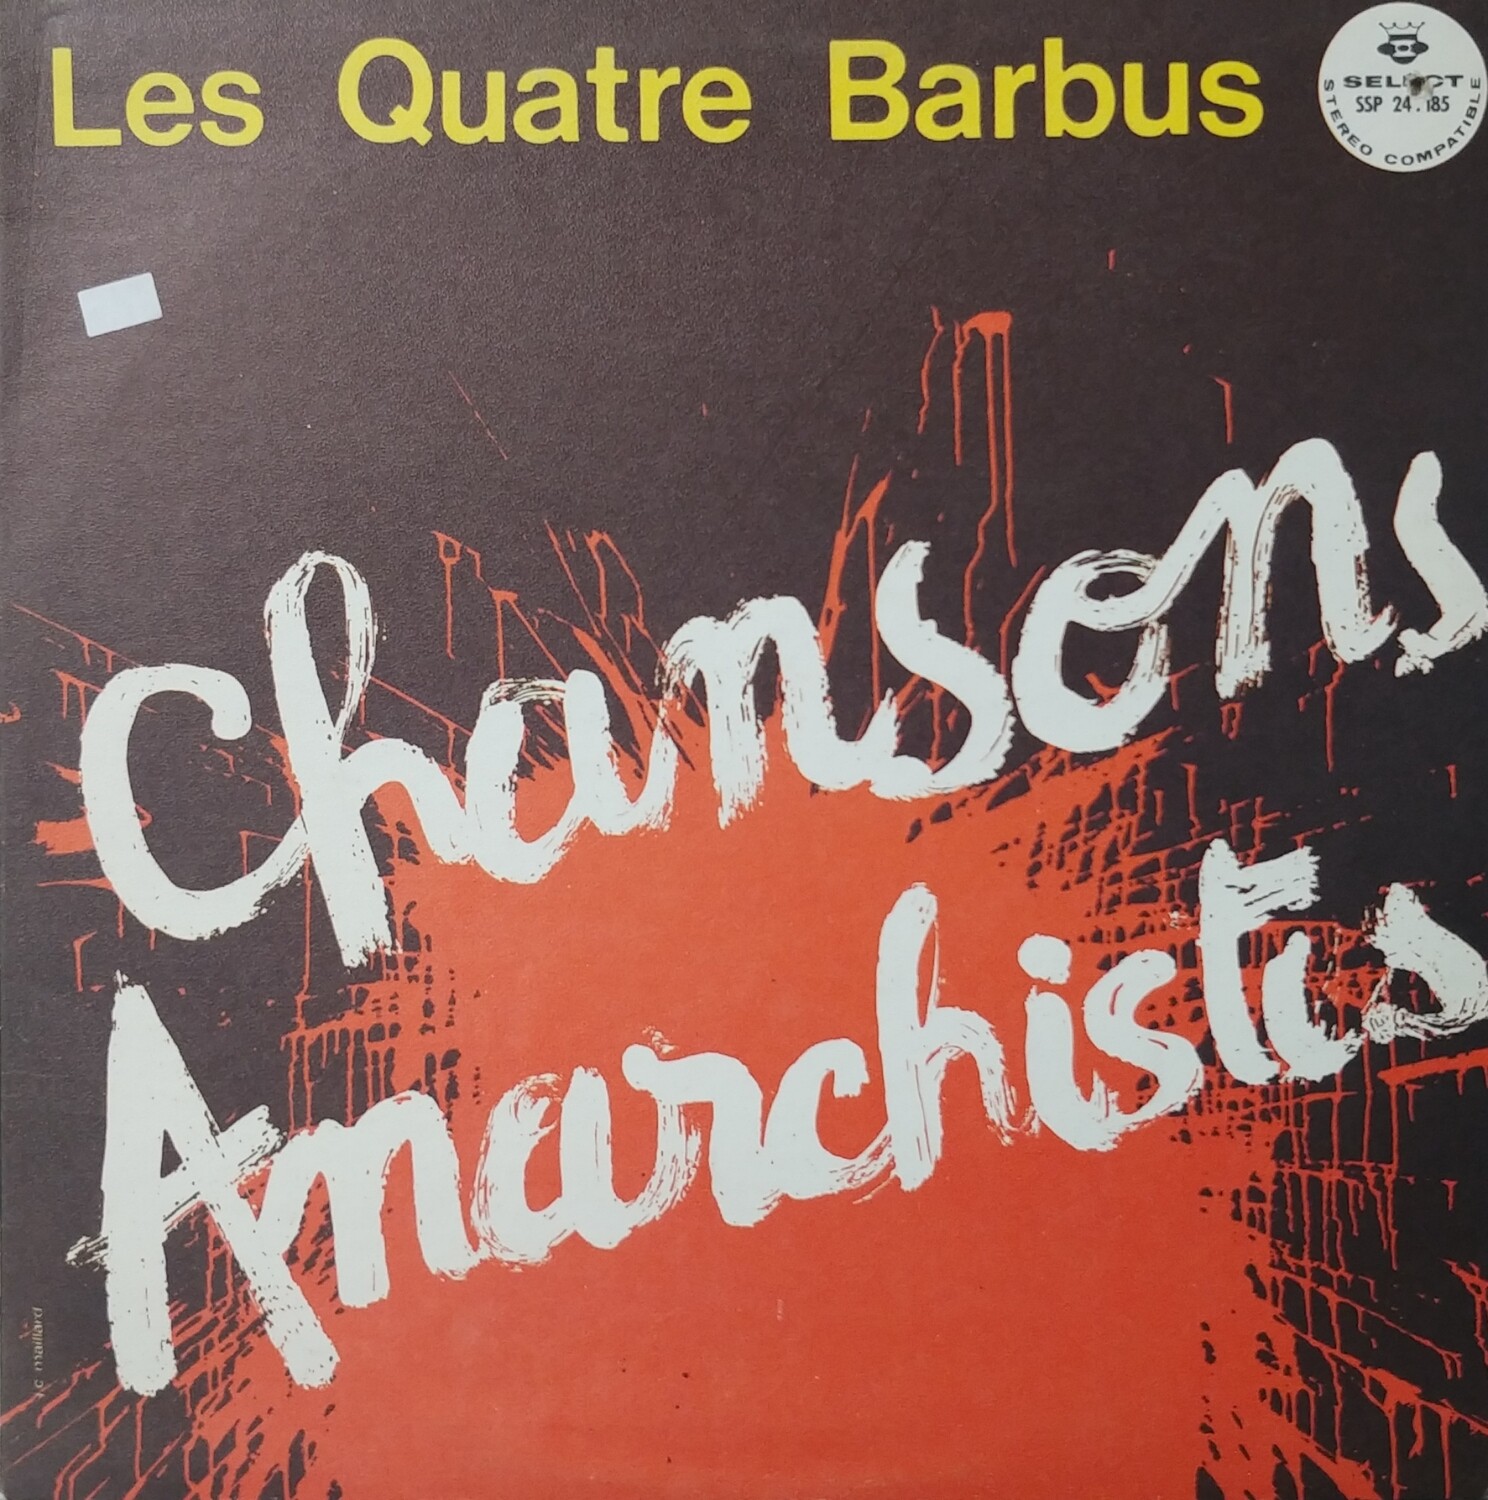 Les Quatre Barbus - Chansons Anarchistes